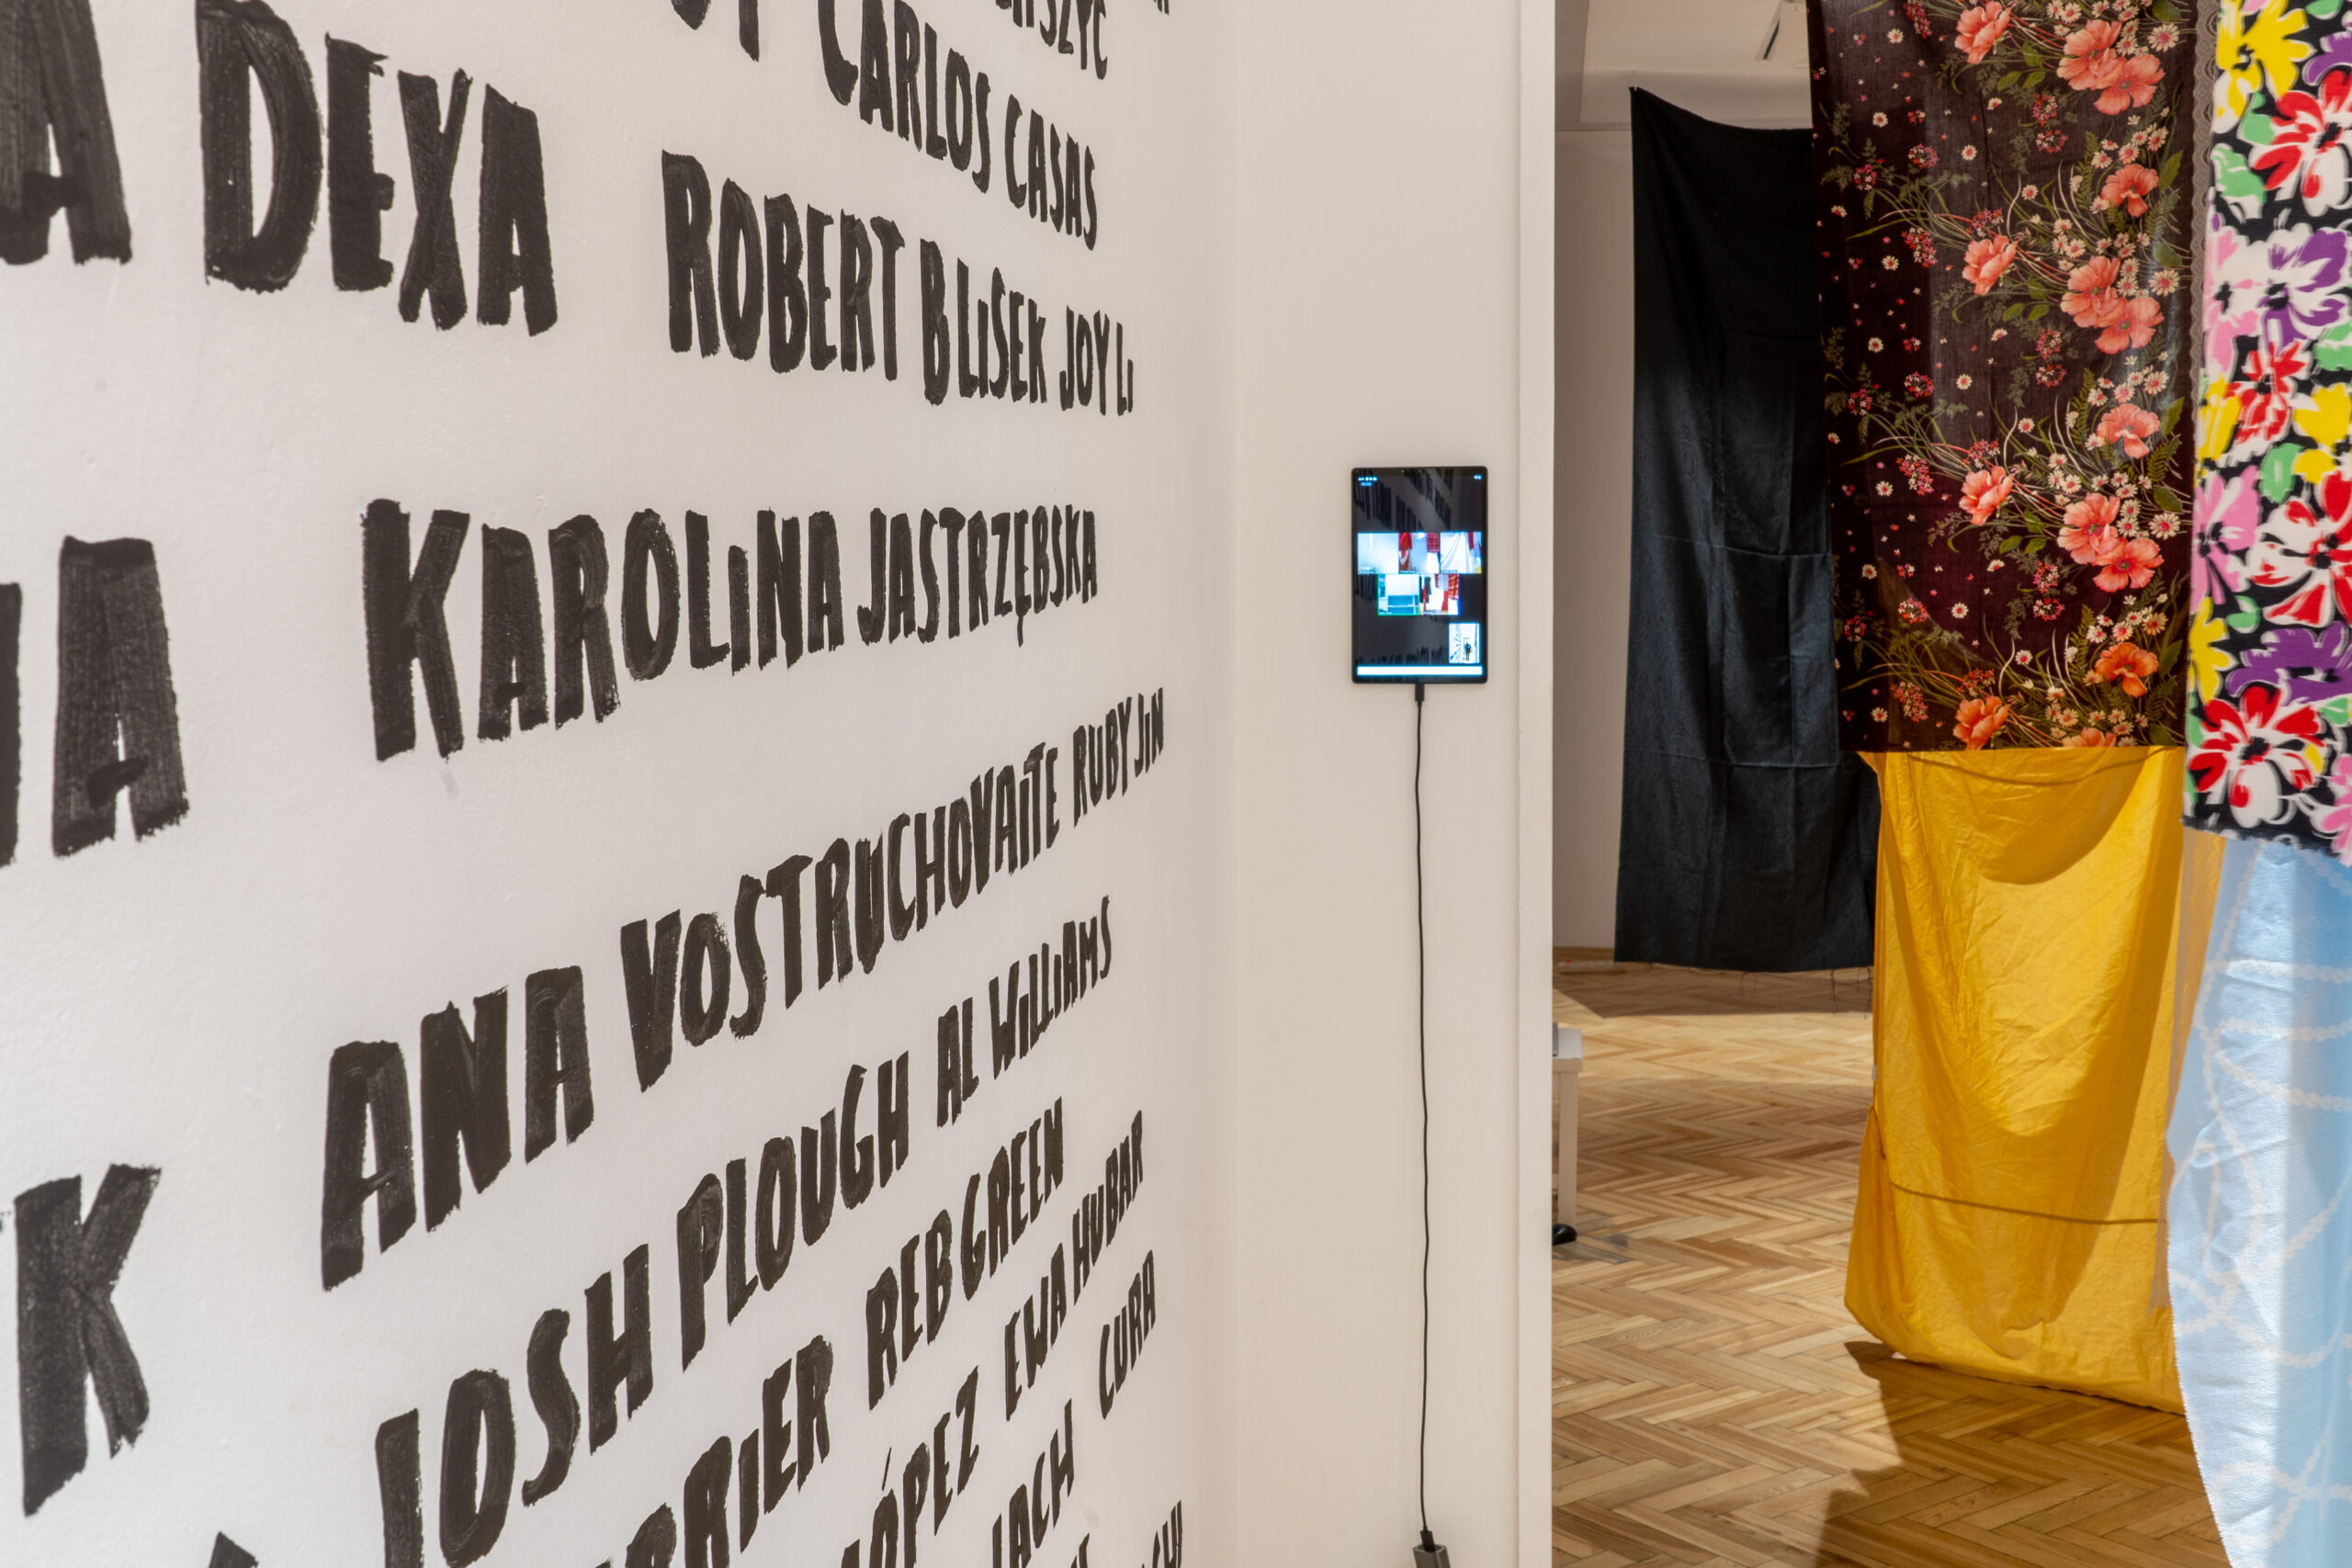 Na zdjęciu znajduje się kawałek ściany z wypisanymi nazwiskami, przyklejony do ściany tablet, wyświetlający konferencję na zoomie oraz fragment wnętrza sali wystawowej z zawieszonymi wewnątrz materiałami.